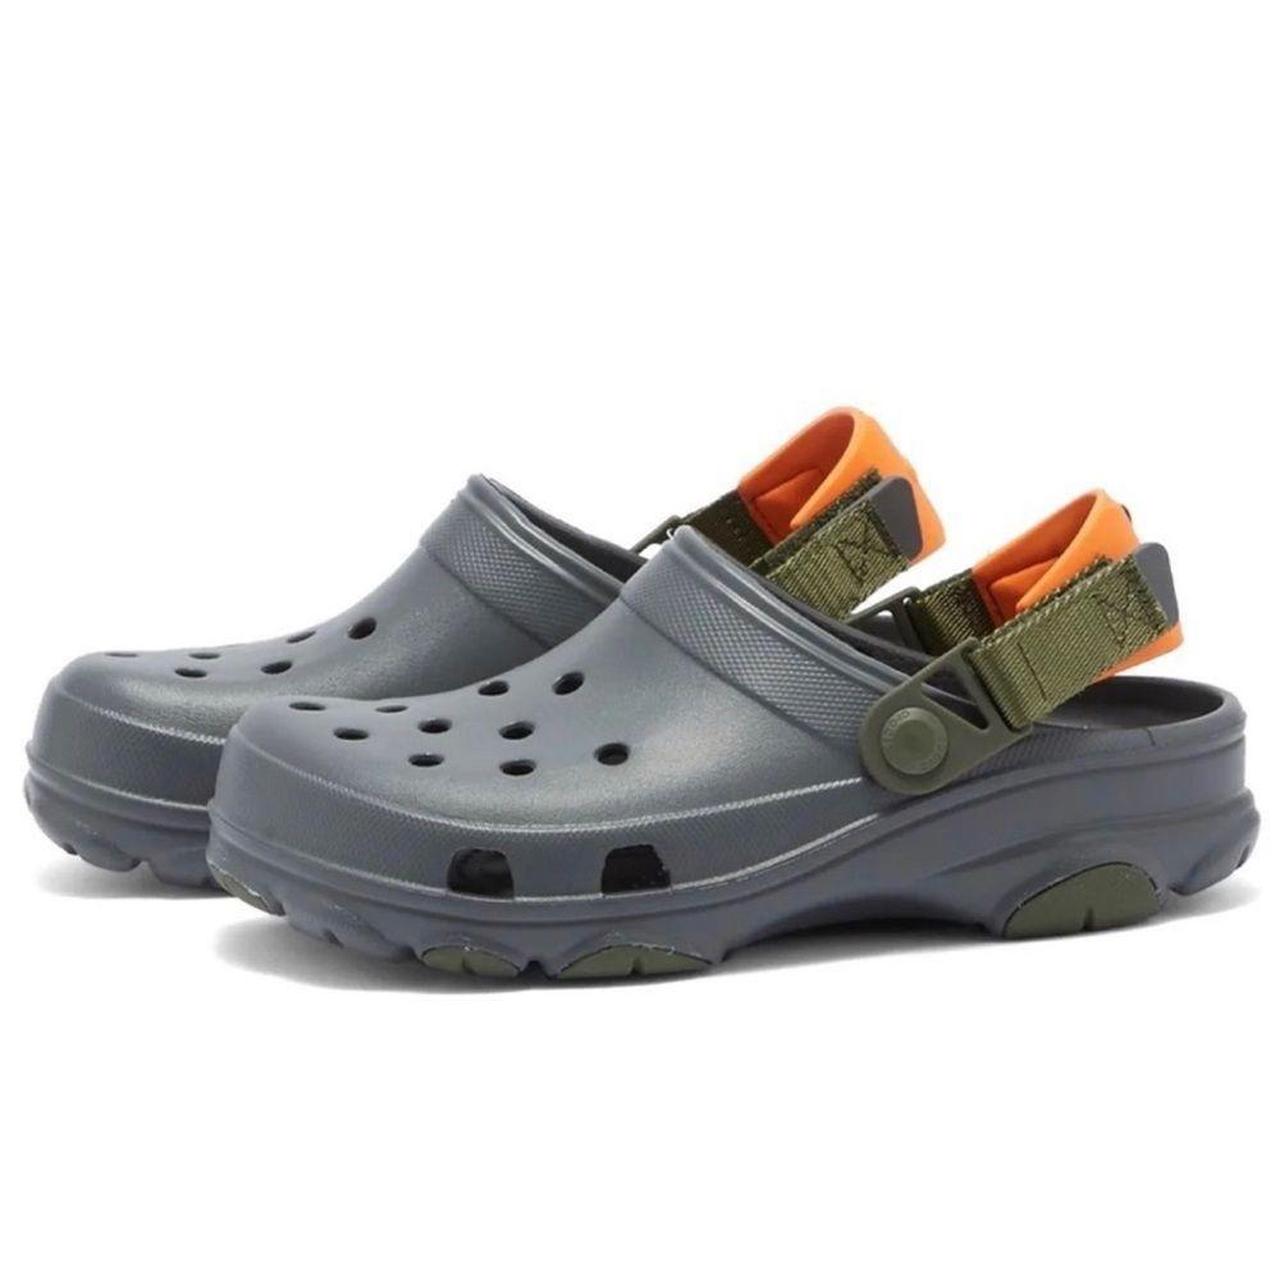 Croc Shoe Charms Jibbitz alphabet letters black grey - Depop